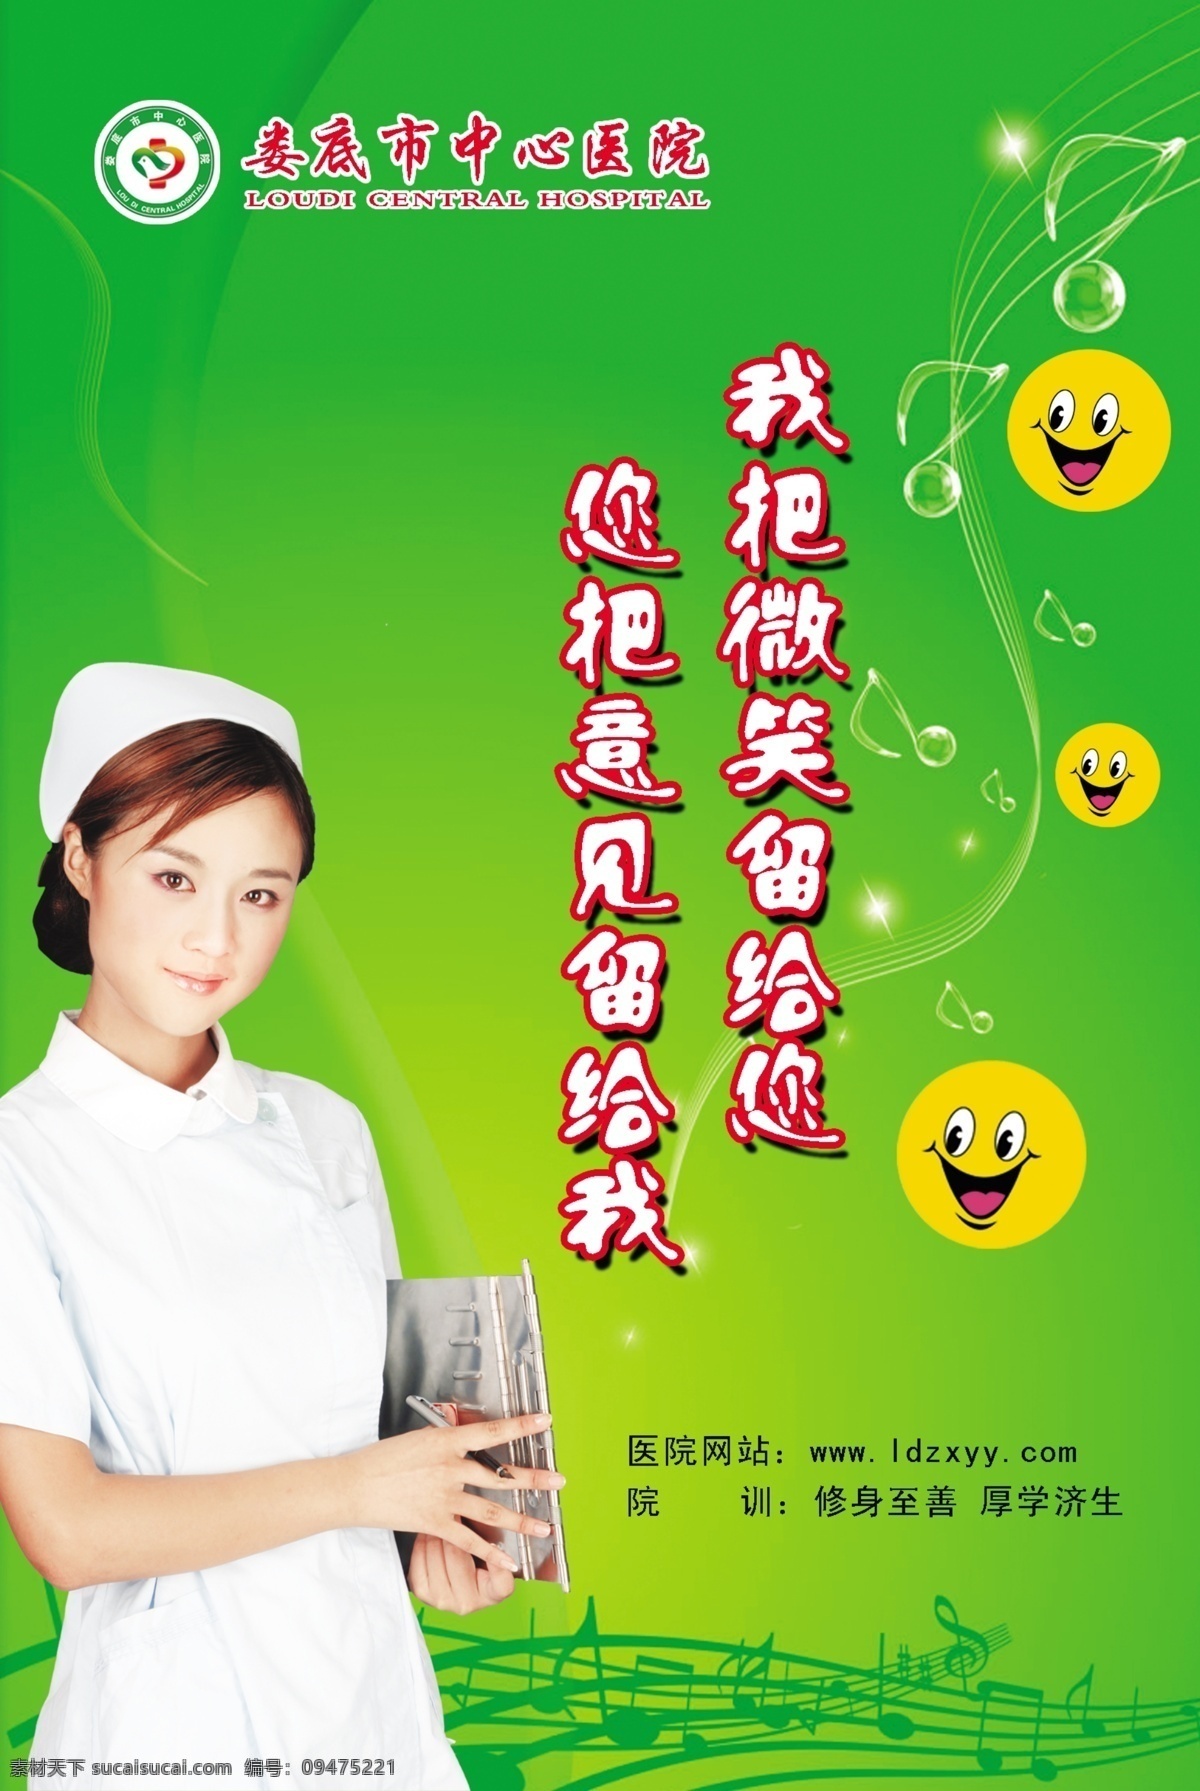 医院宣传画 医院 宣传画 版报 海报 标语 笑脸 护士 绿色 音乐 分层 源文件库